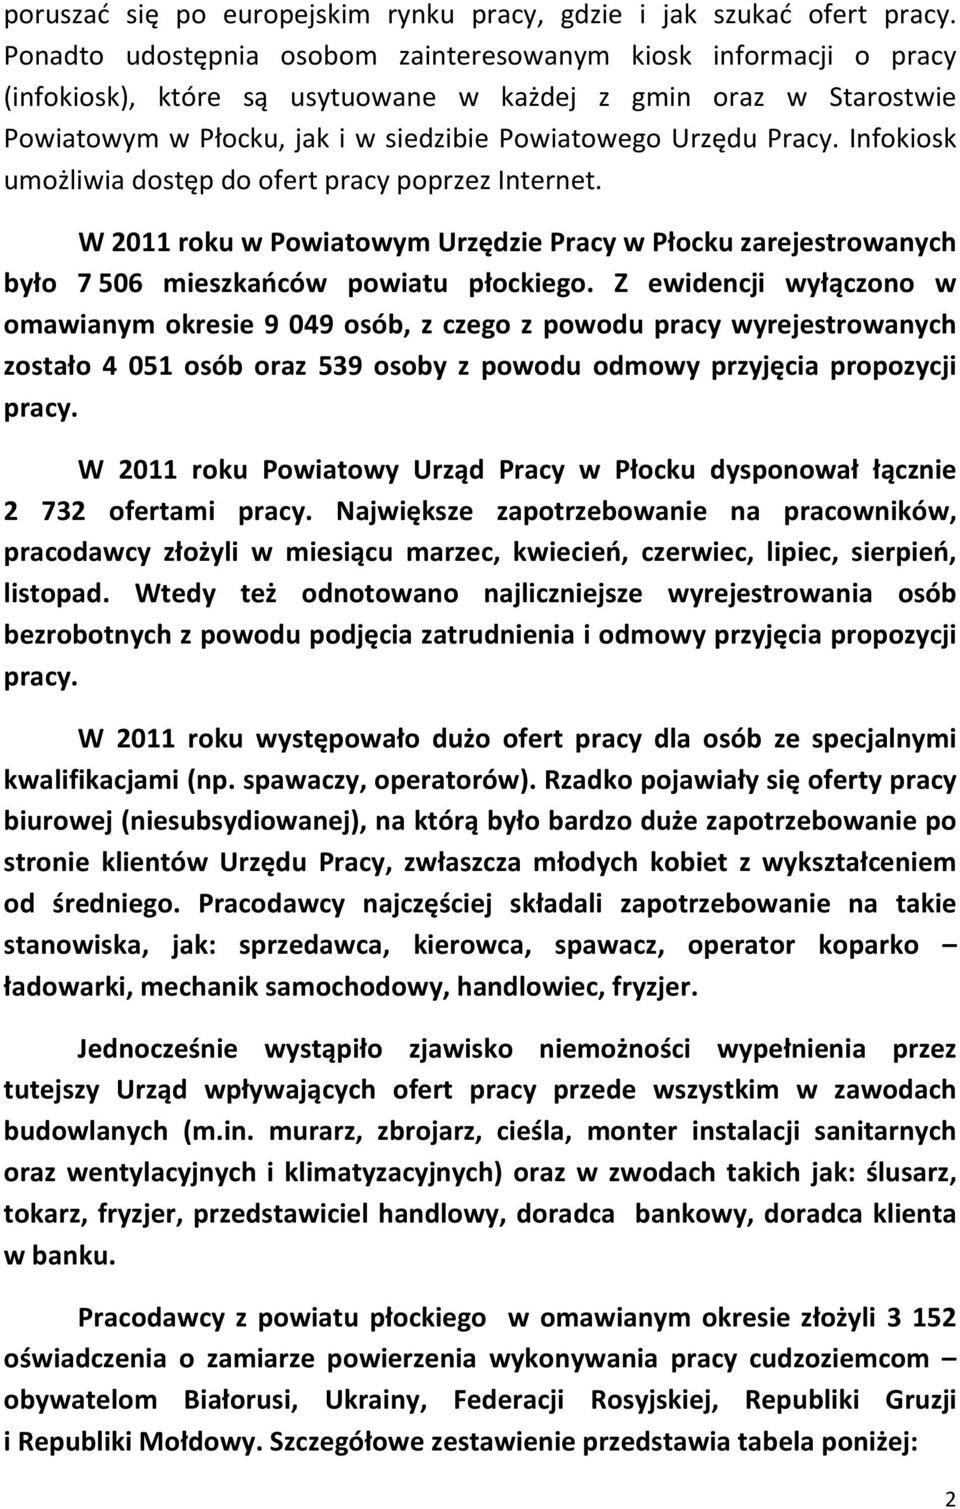 Infokiosk umożliwia dostęp do ofert pracy poprzez Internet. W 2011 roku w Powiatowym Urzędzie Pracy w Płocku zarejestrowanych było 7 506 mieszkańców powiatu płockiego.